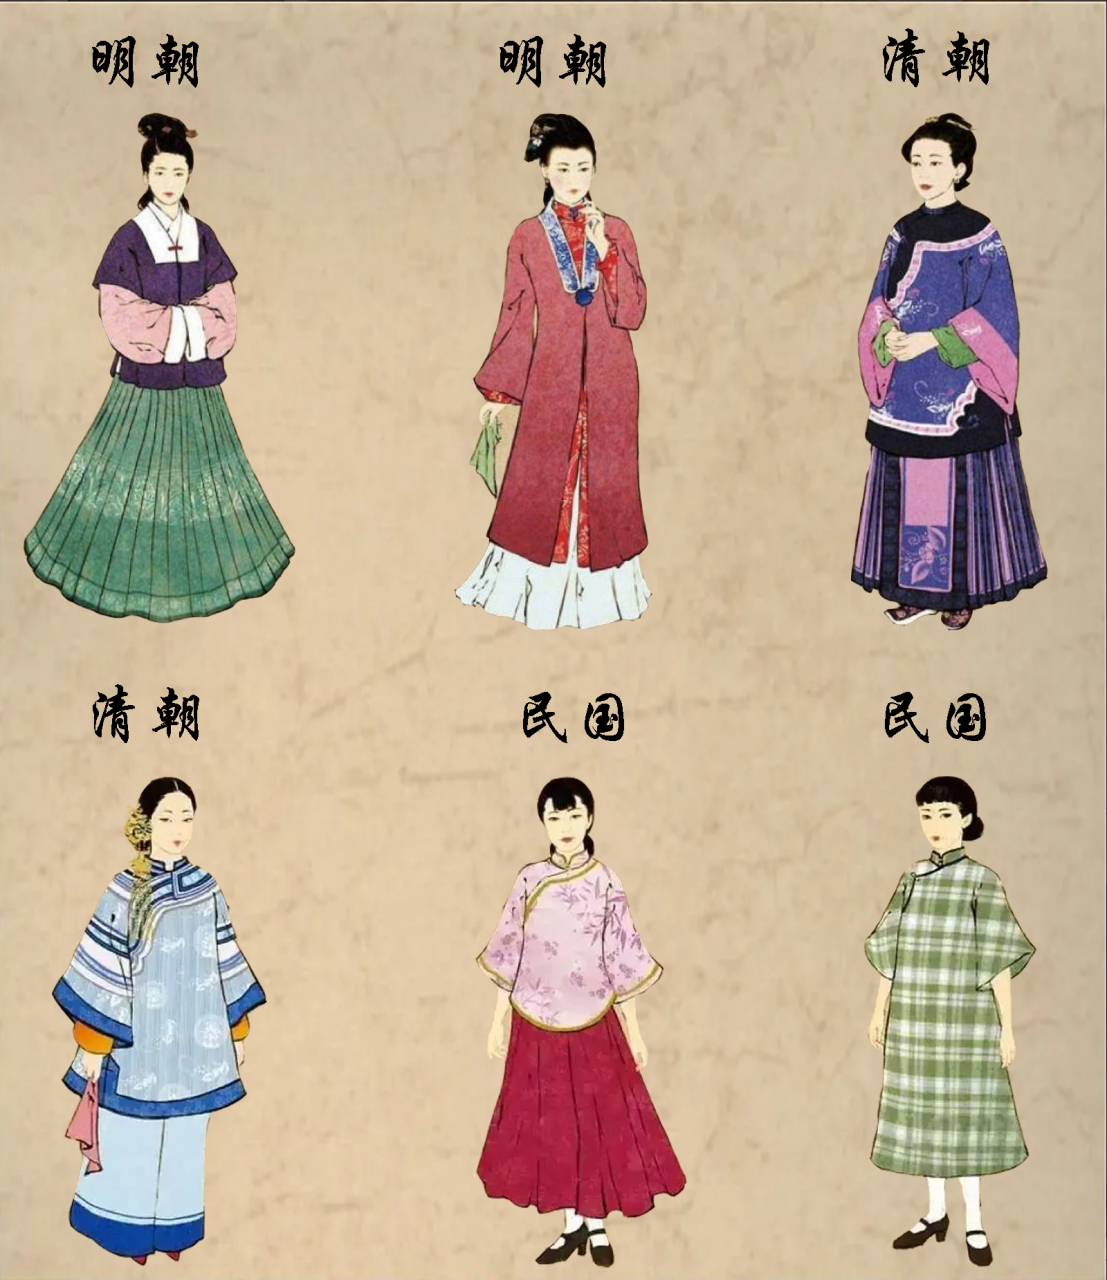 中国传统服饰演变